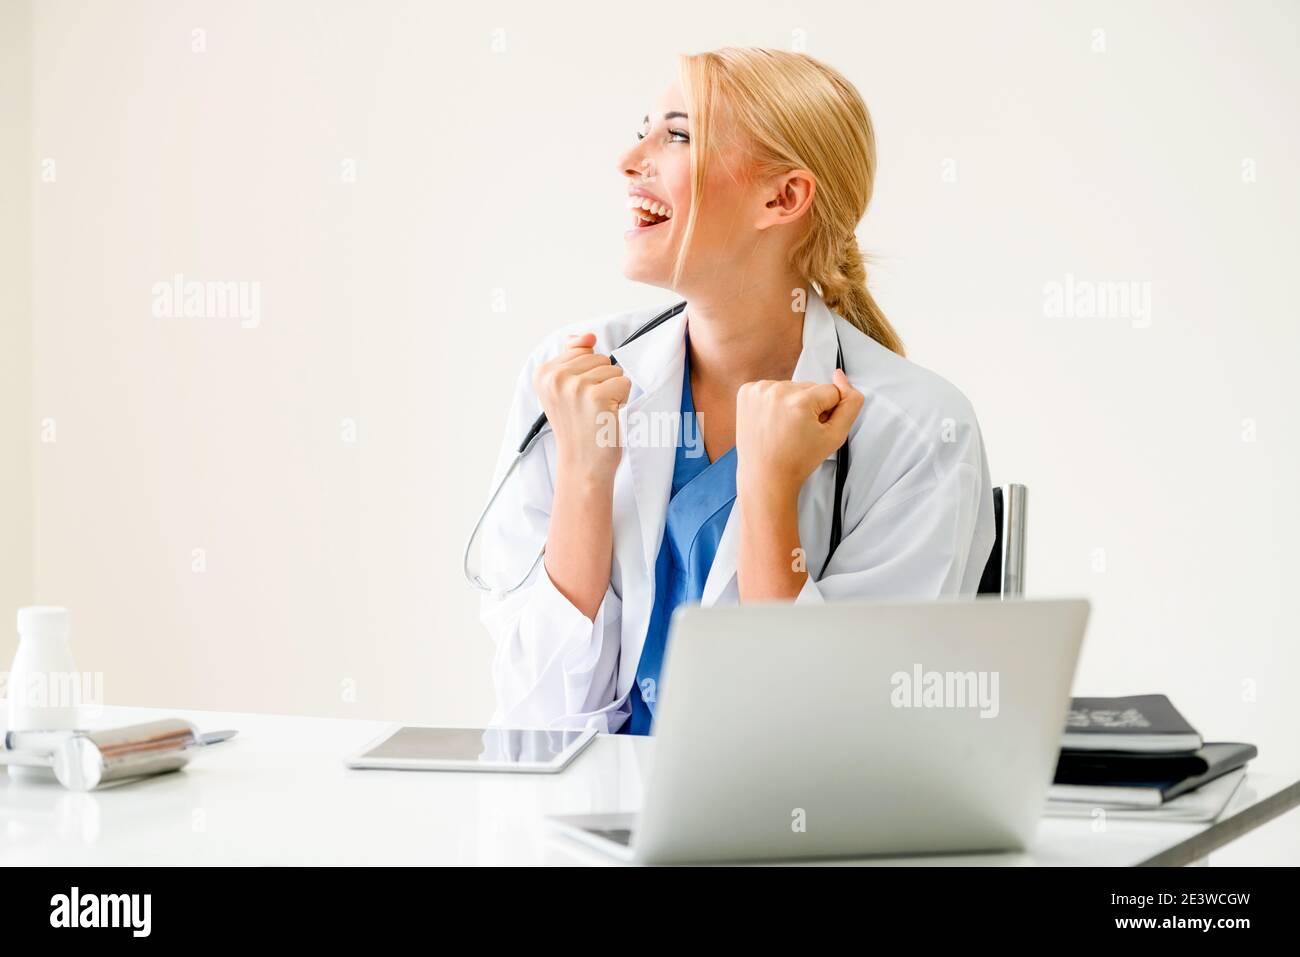 Gerne erfolgreiche Frau Doktor fühlt sich herrlich im Krankenhaus oder medizinisches Institut während der Arbeit an medizinischen Bericht im Büro. Erfolg Konzept. Stockfoto